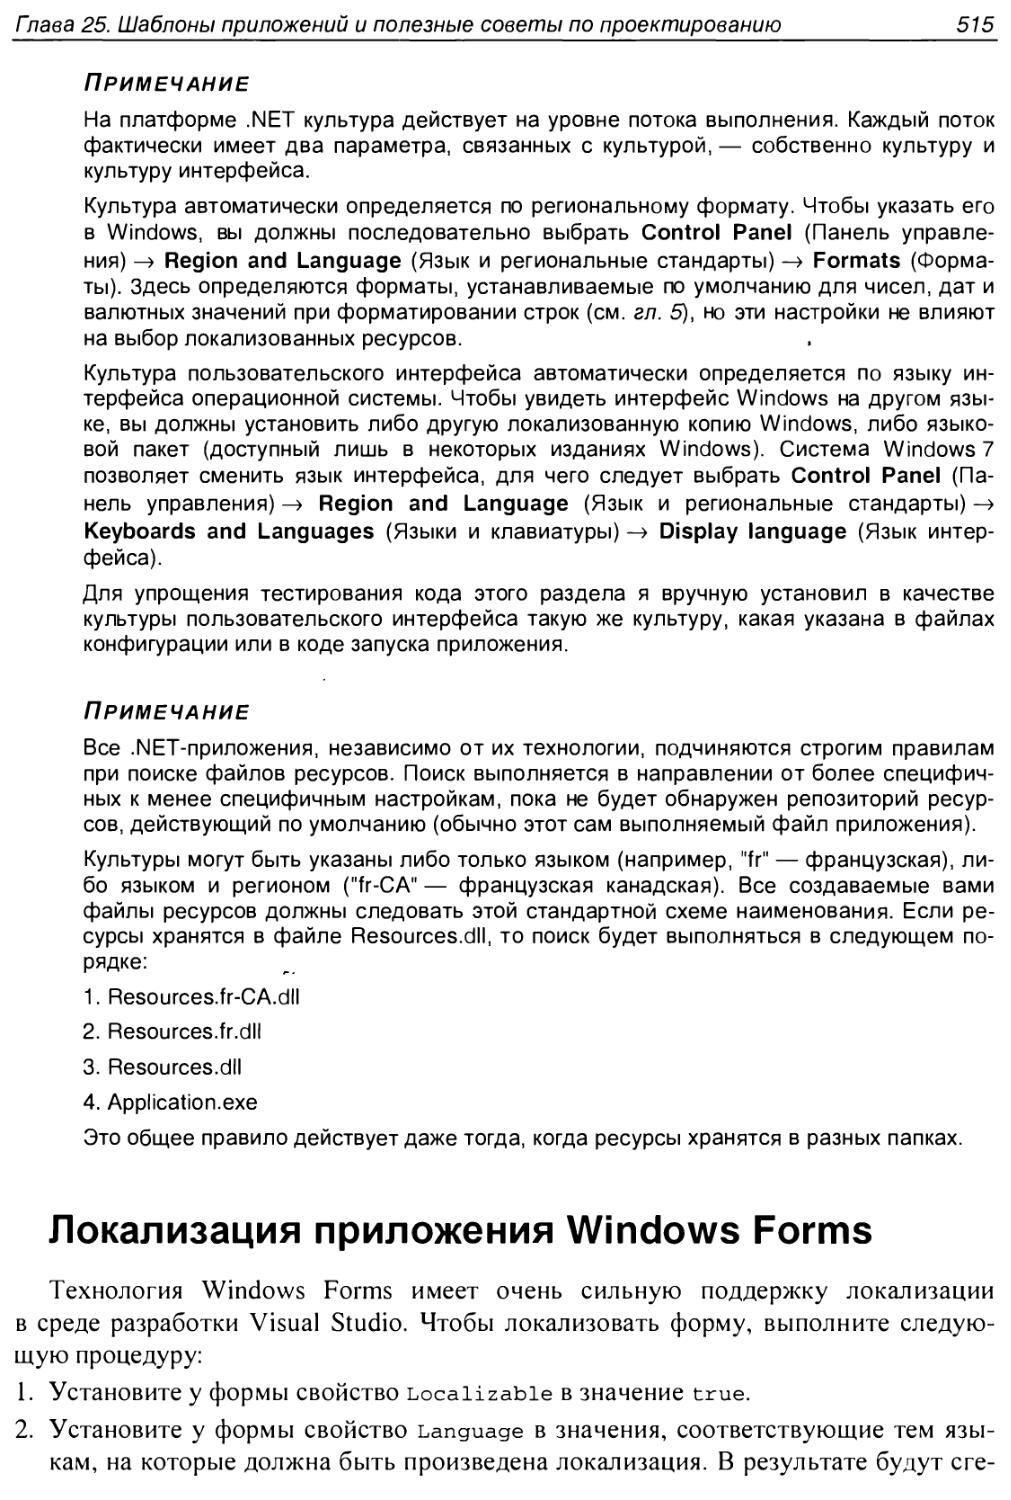 Локализация приложения Windows Forms